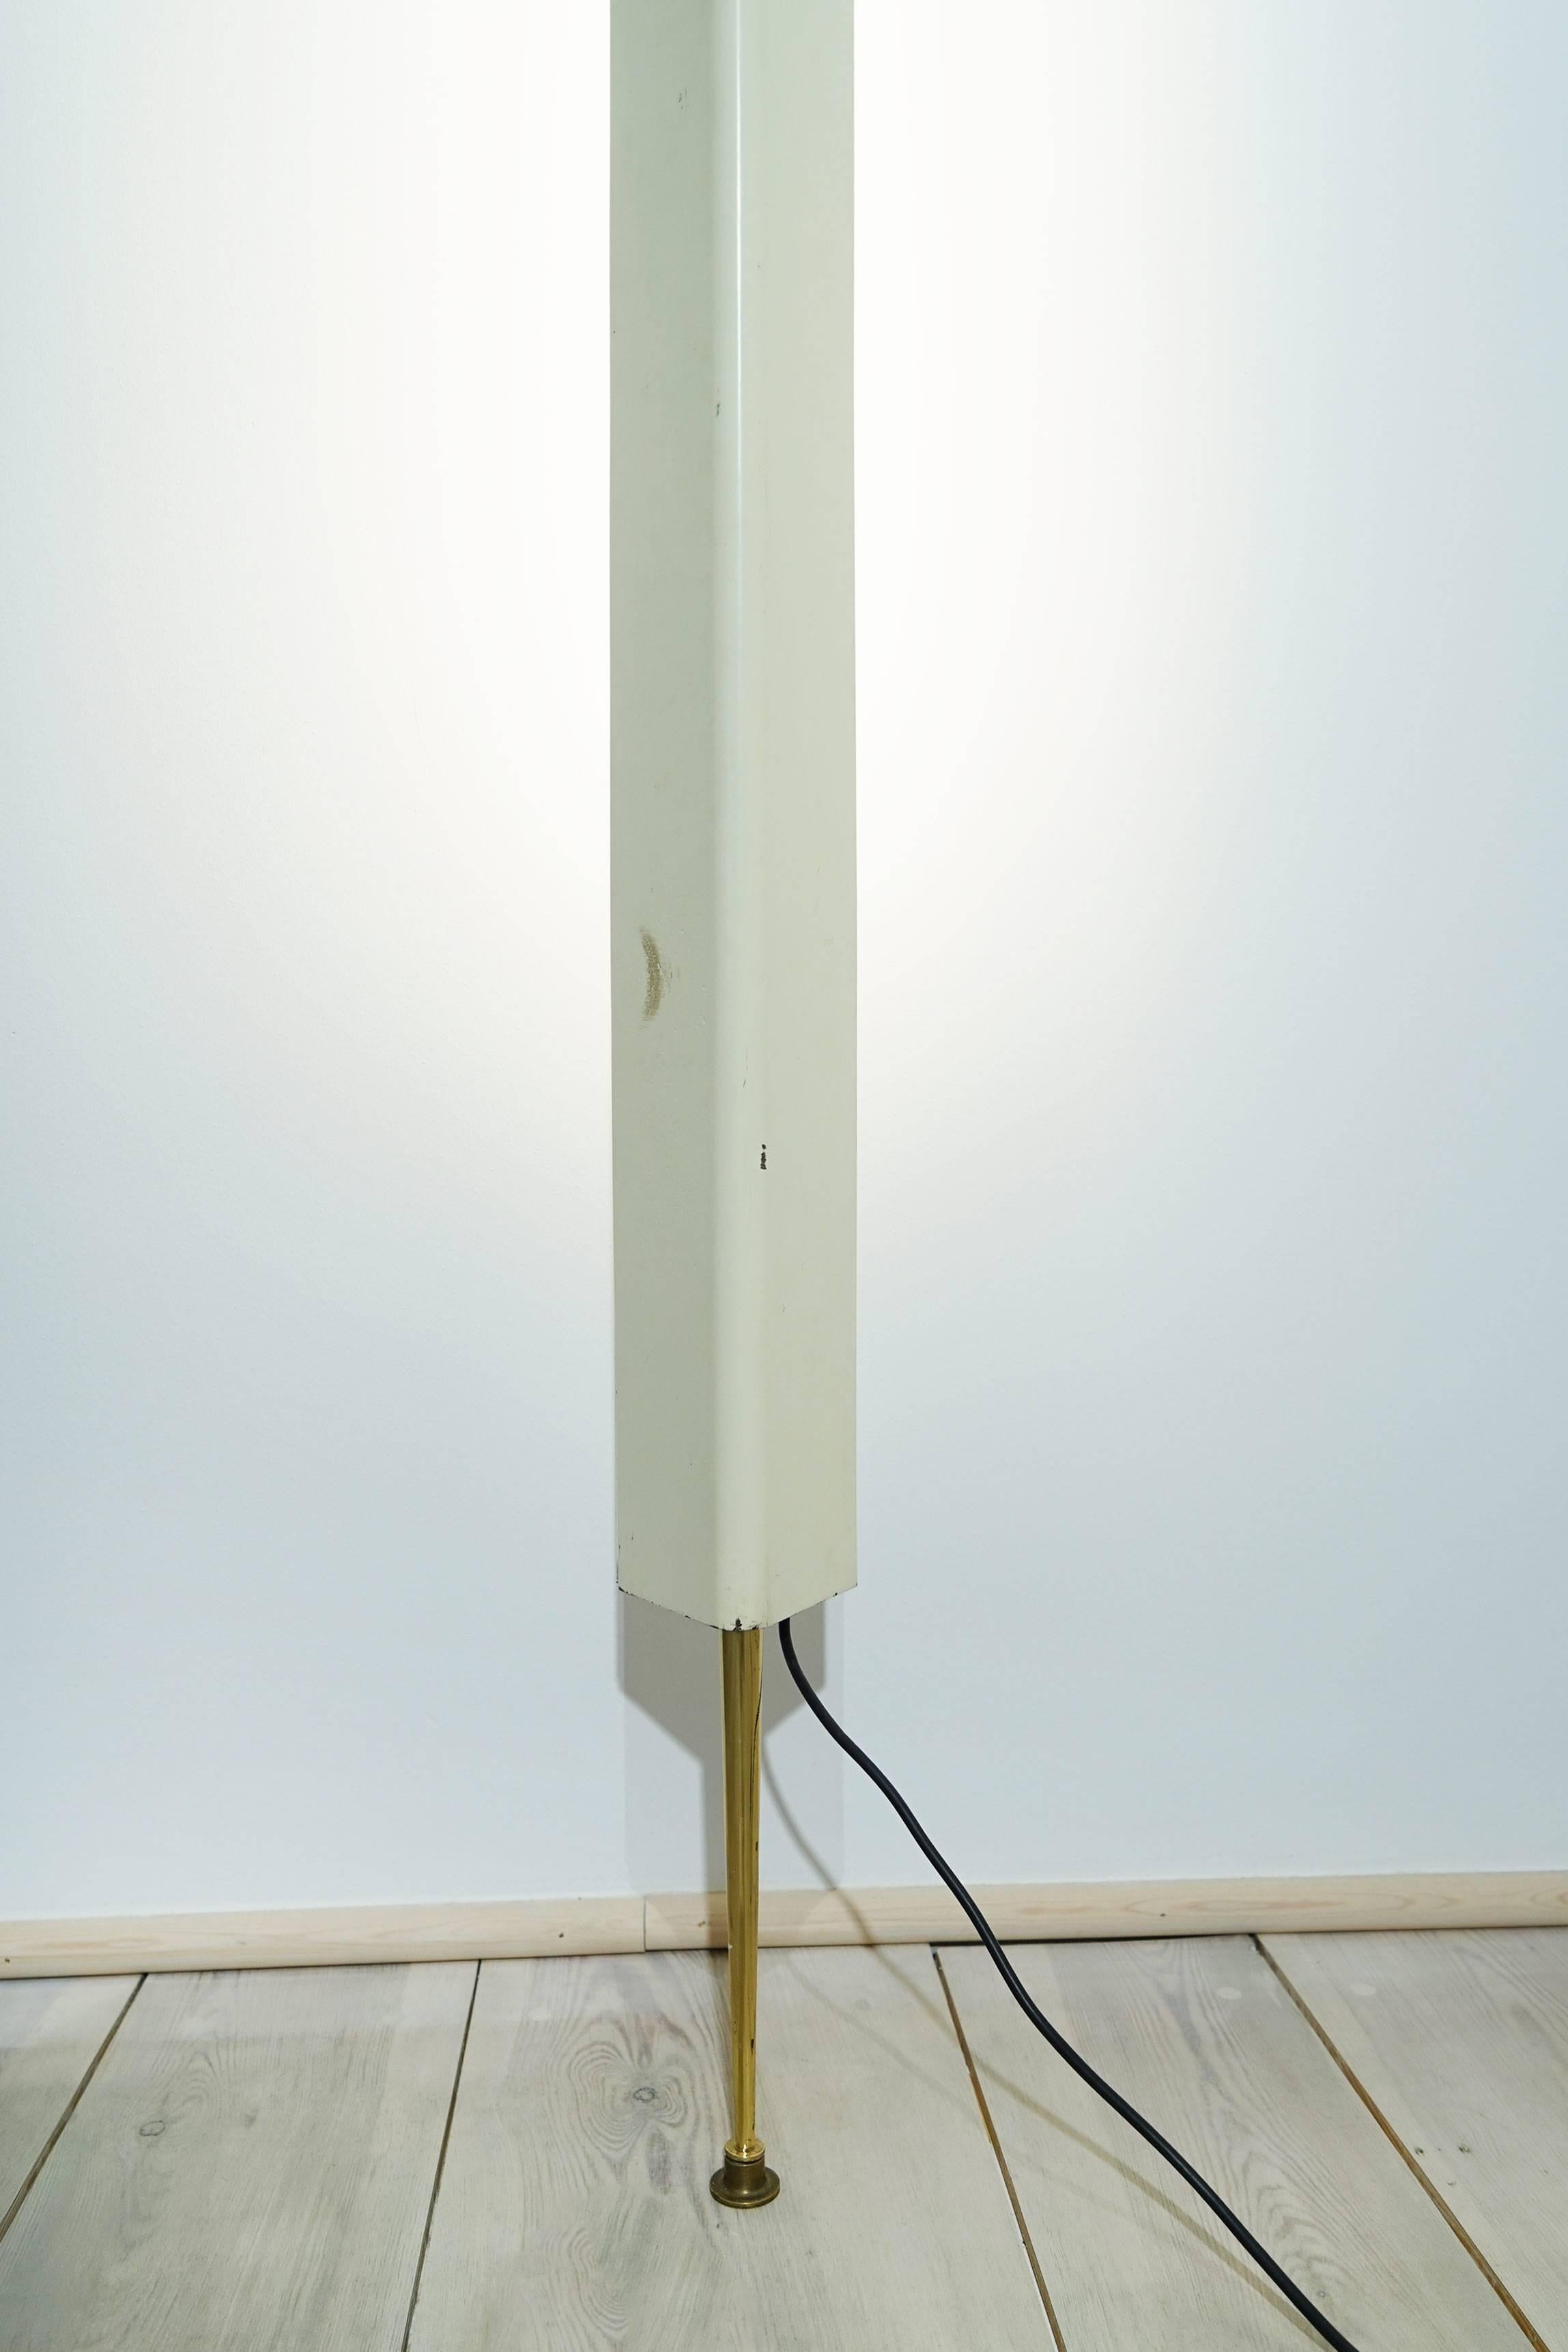 Floor lamp LT8 by Osvaldo Borsani, Arredoluce, Italy, 1958

for suspension between ceiling and floor.